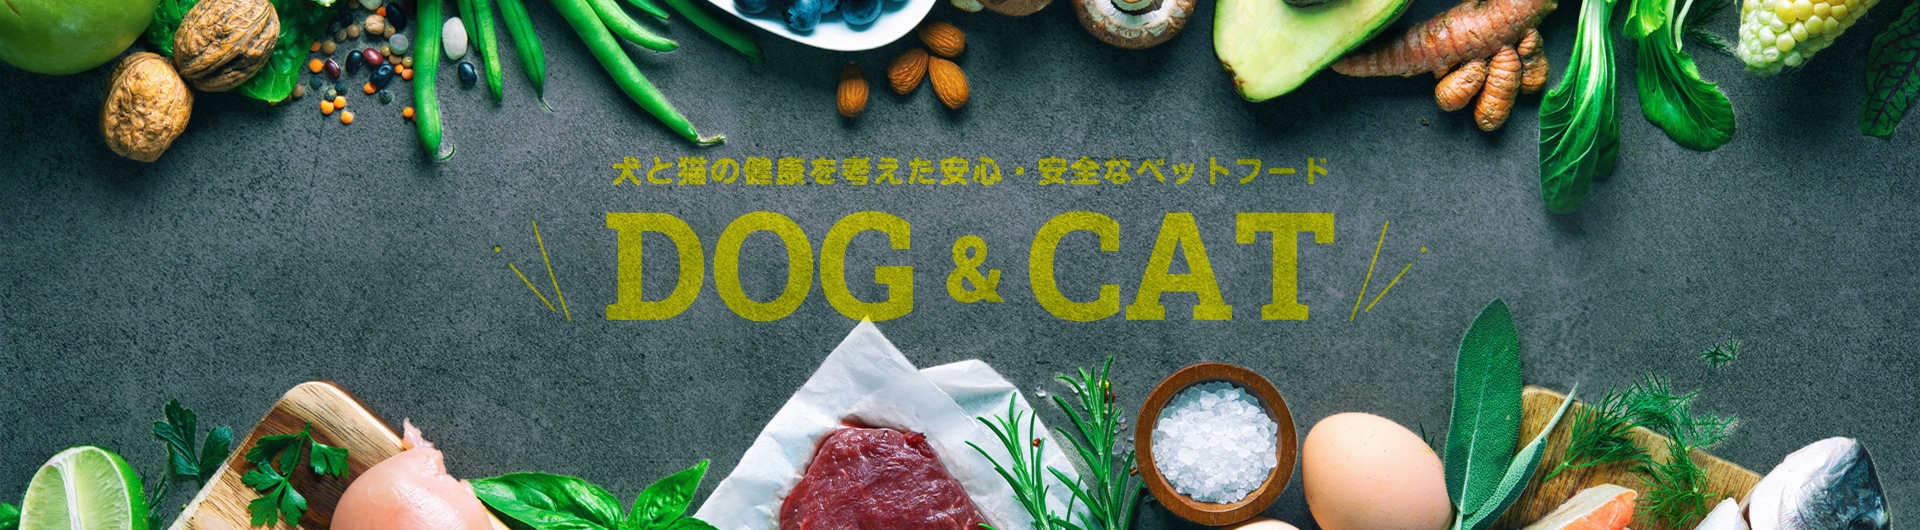 犬と猫の健康を考えた安心・安全なペットフード DOG&CAT